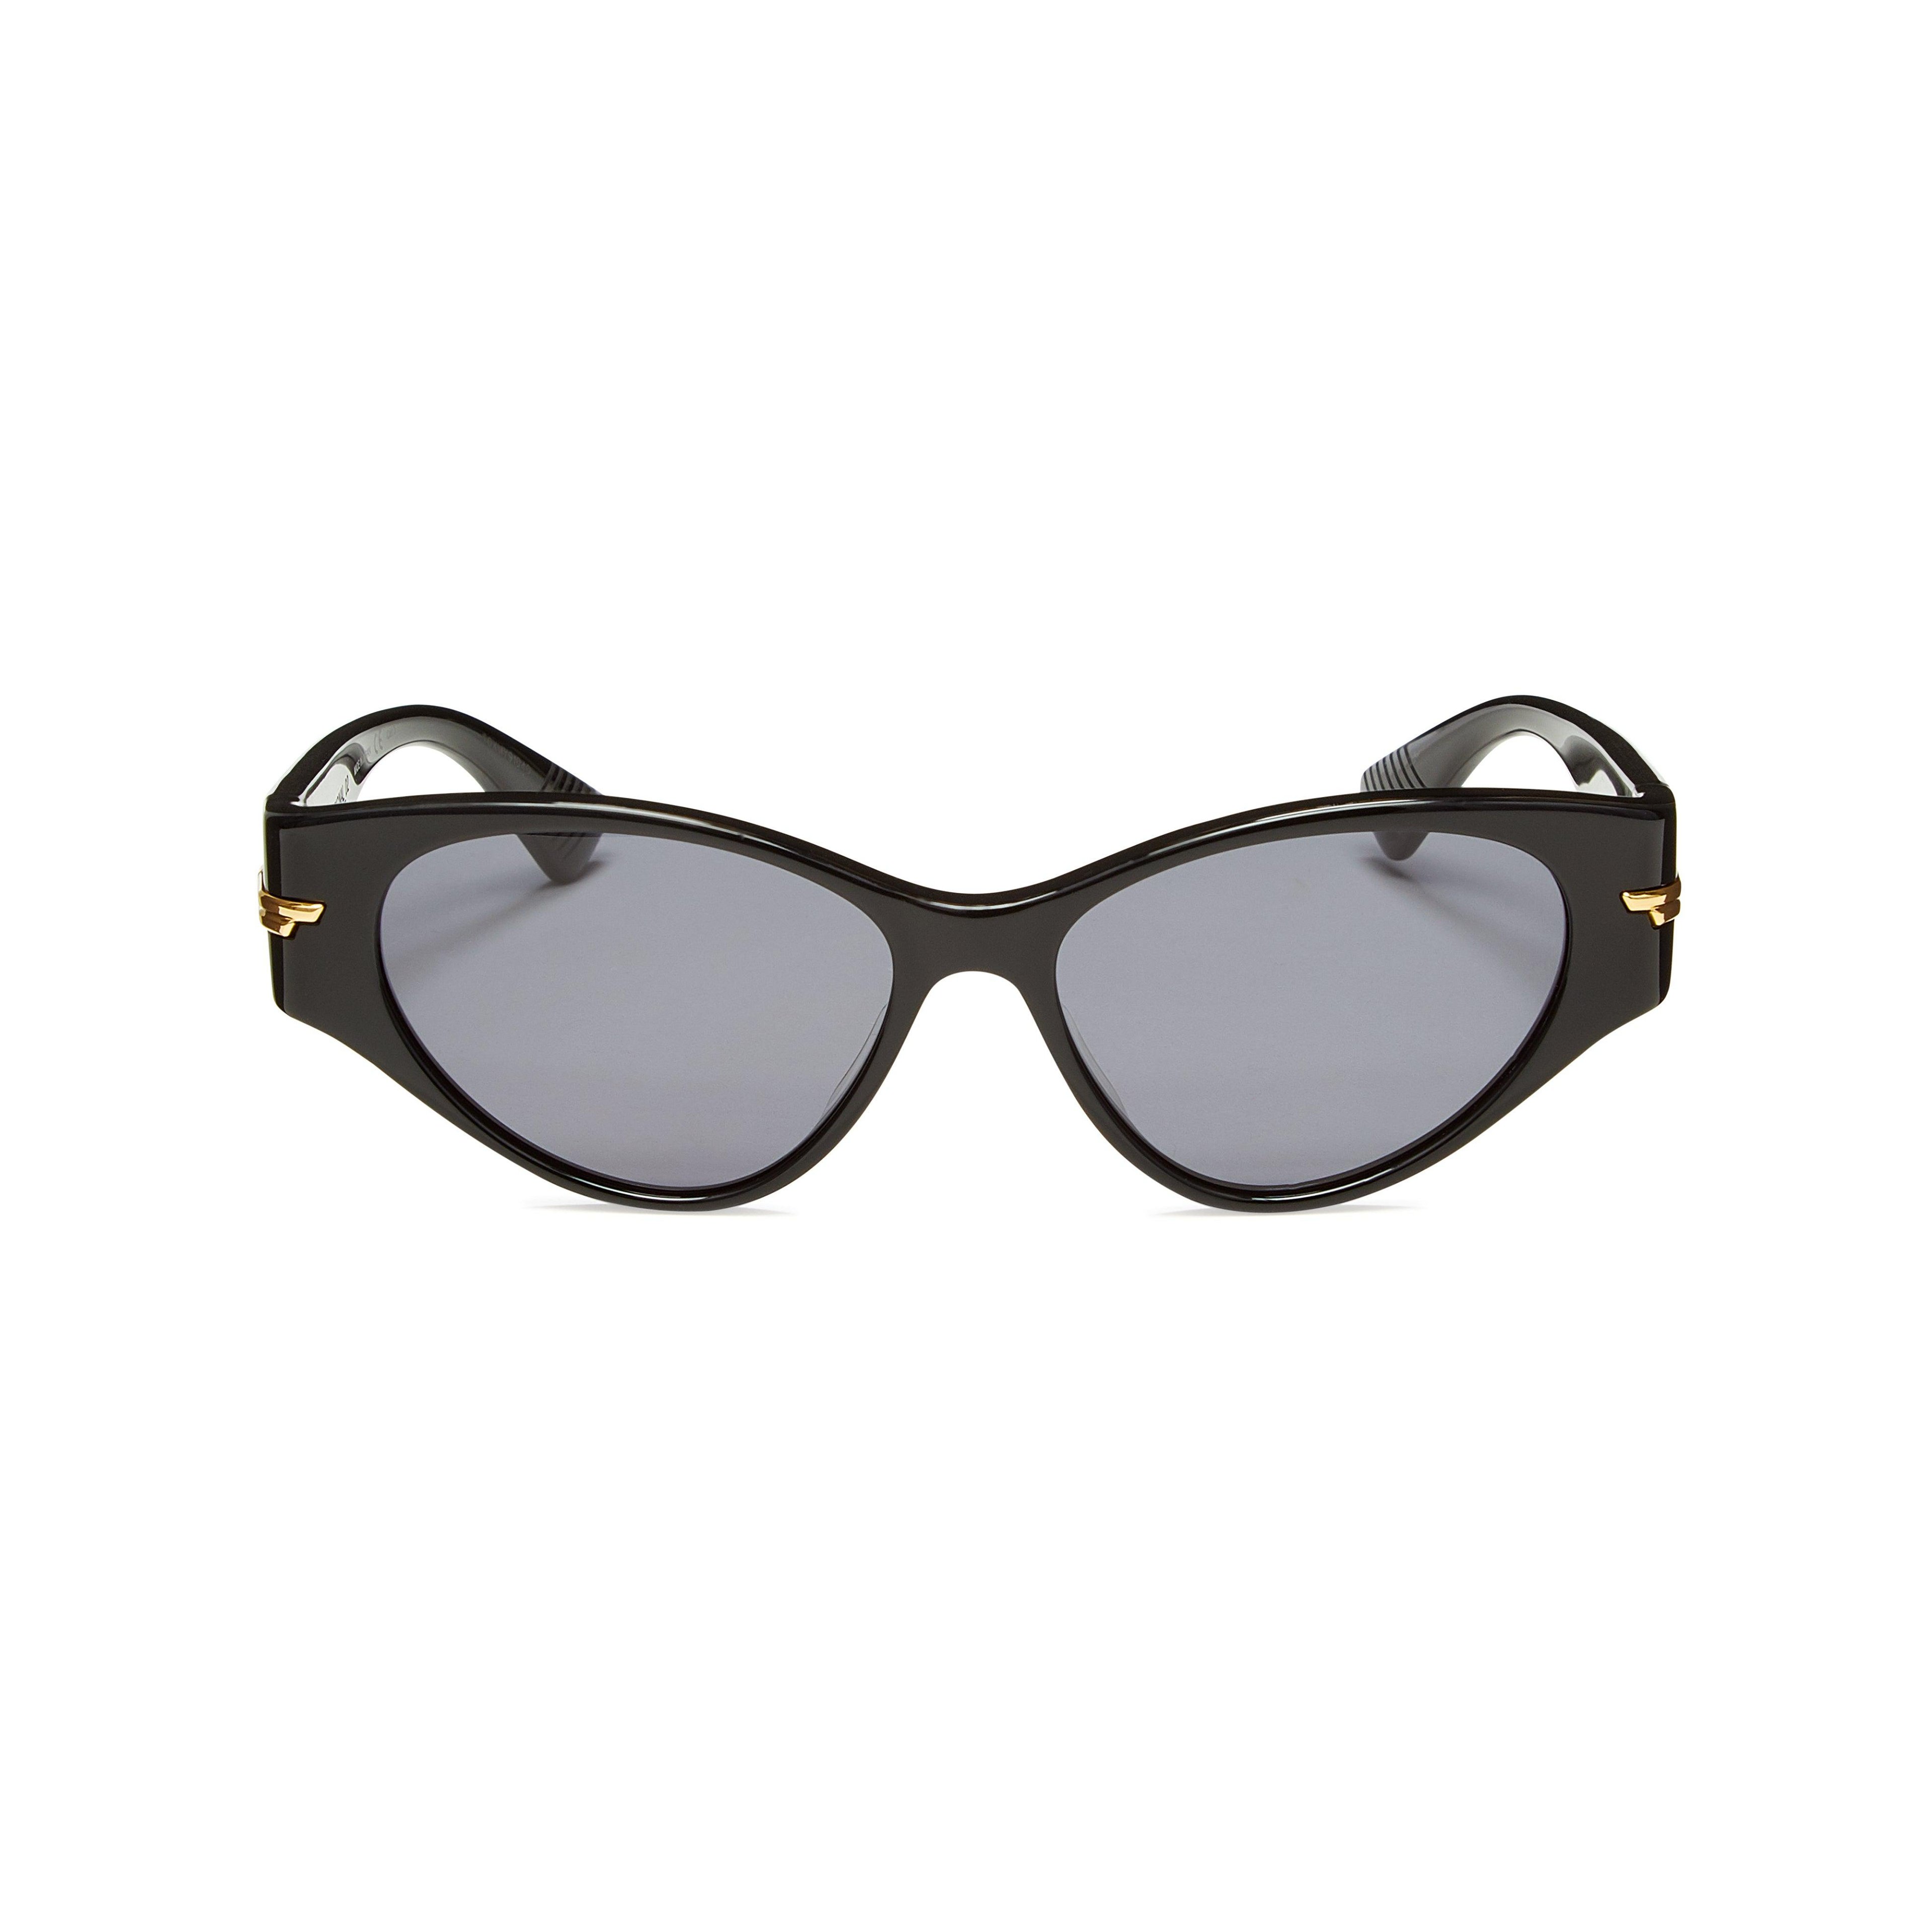 Bottega Veneta - Women’s Angle Sunglasses - (Black) by BOTTEGA VENETA